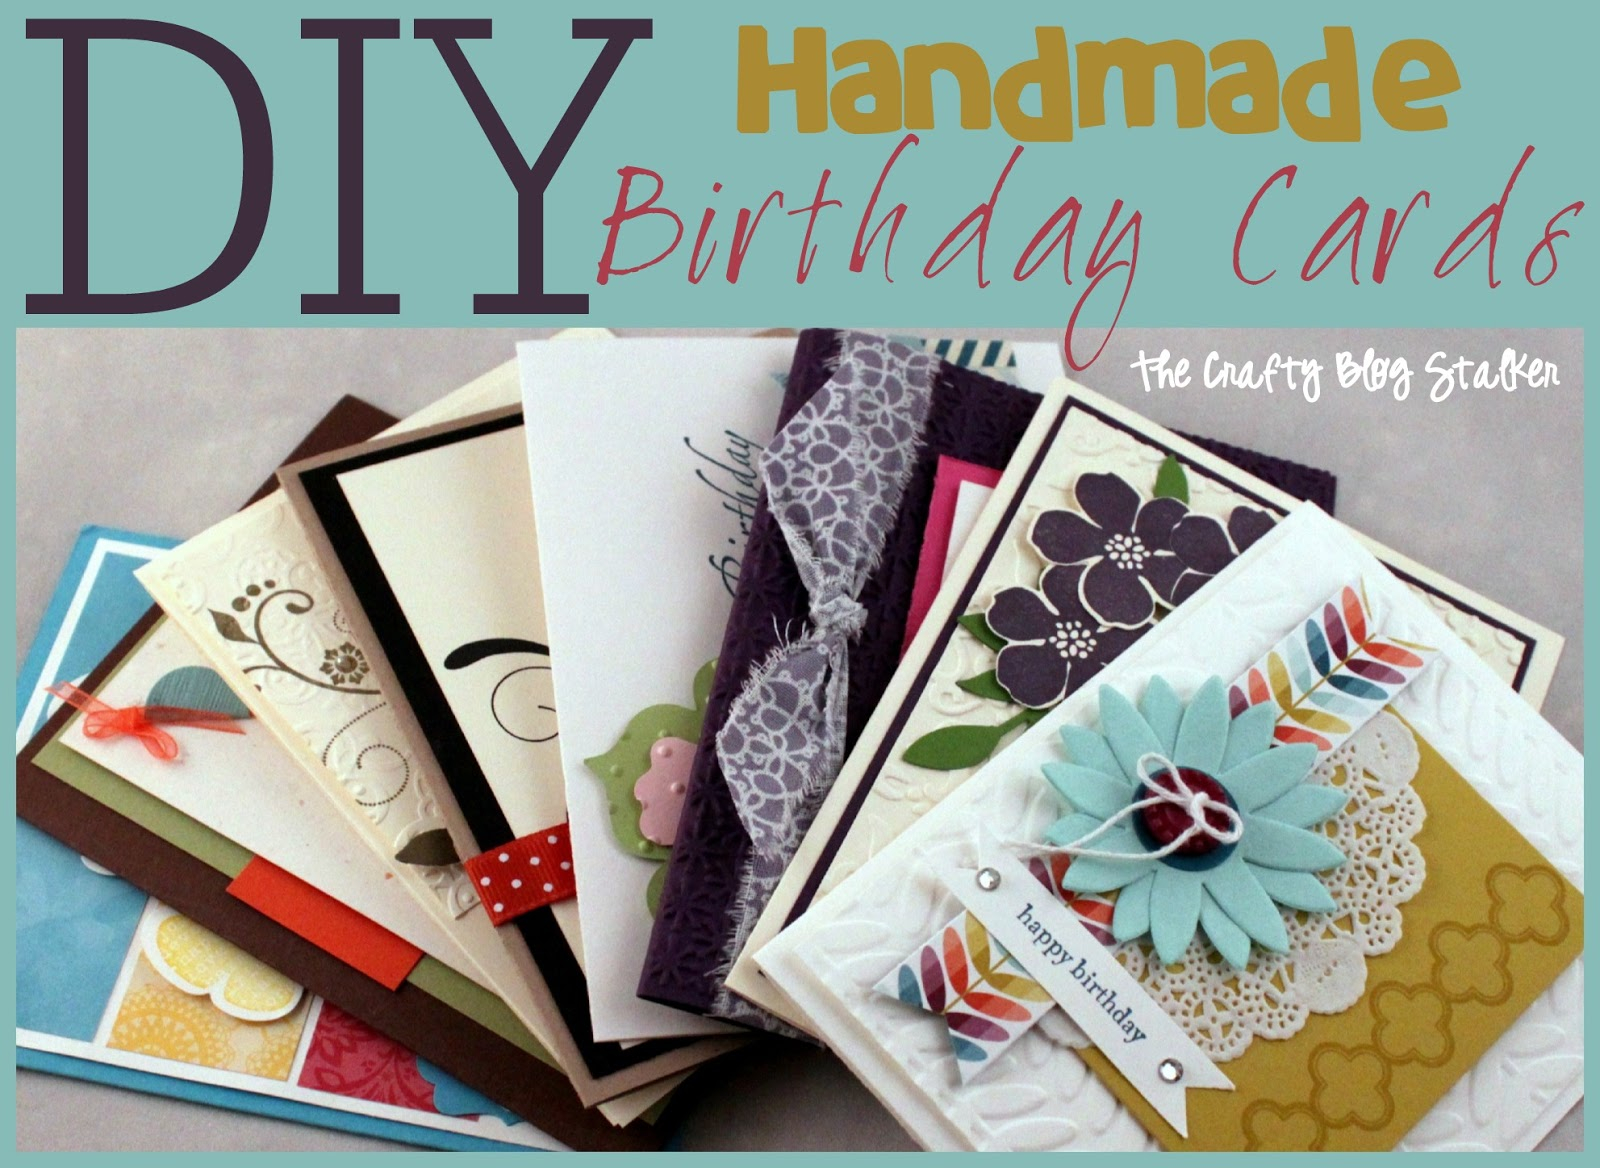 Homemade Card Ideas For Birthdays Handmade Birthday Card Ideas The Crafty Blog Stalker